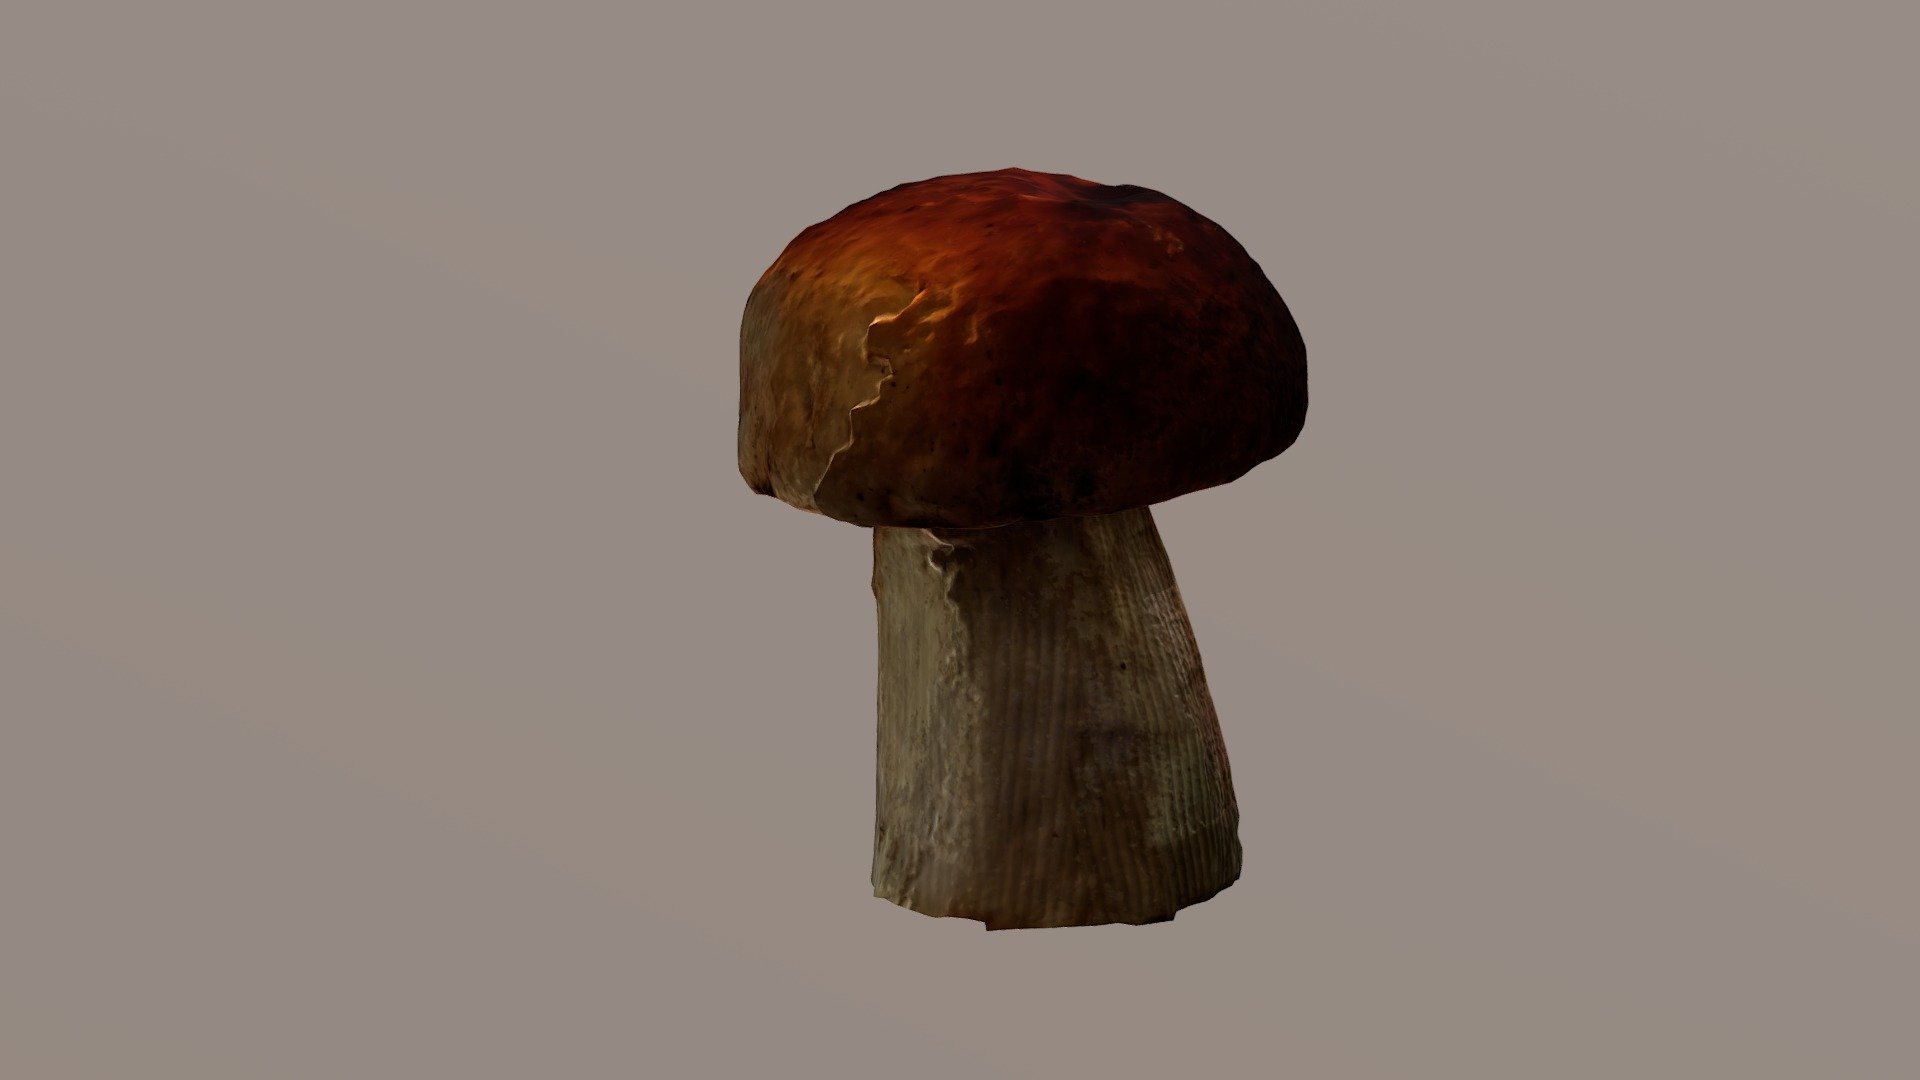 Mushroom - Boletus Edulis